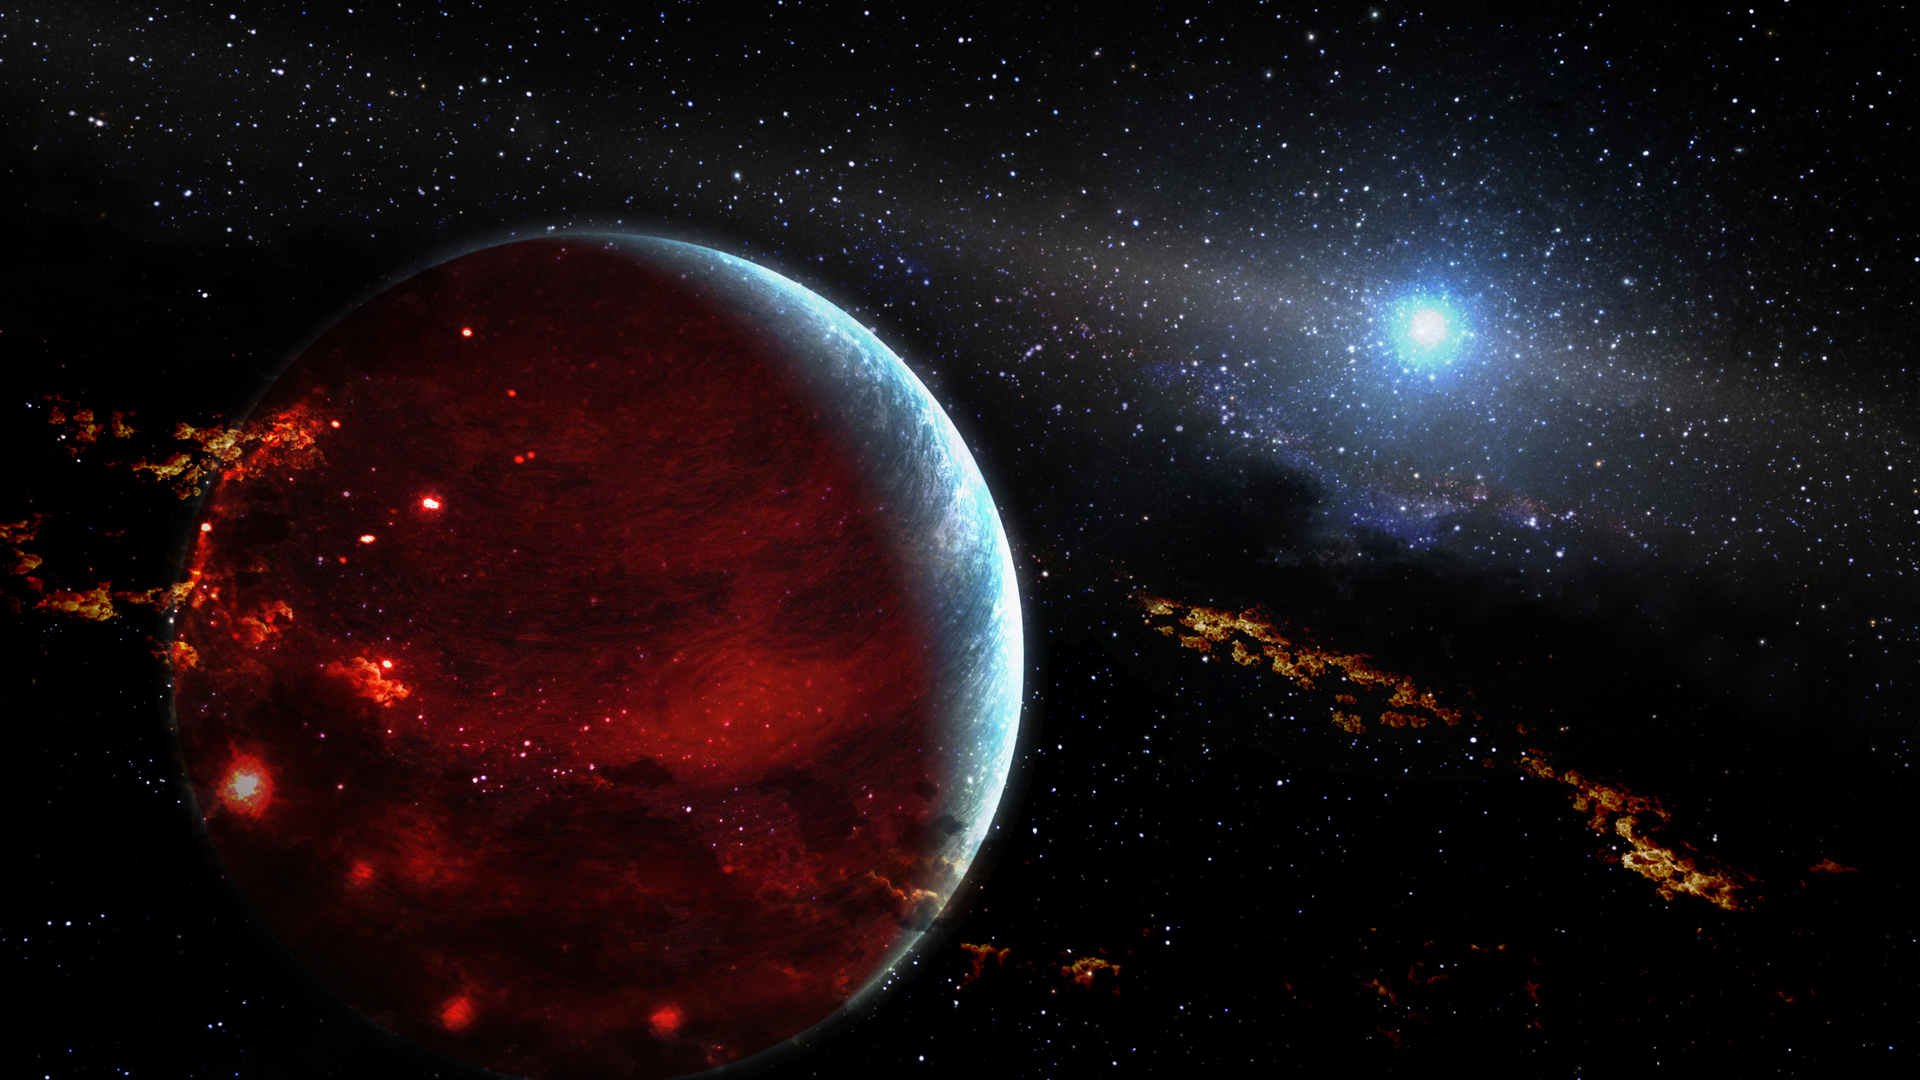 اكتشاف كوكب "ناري" غريب يرجح أنه يذوب من الداخل